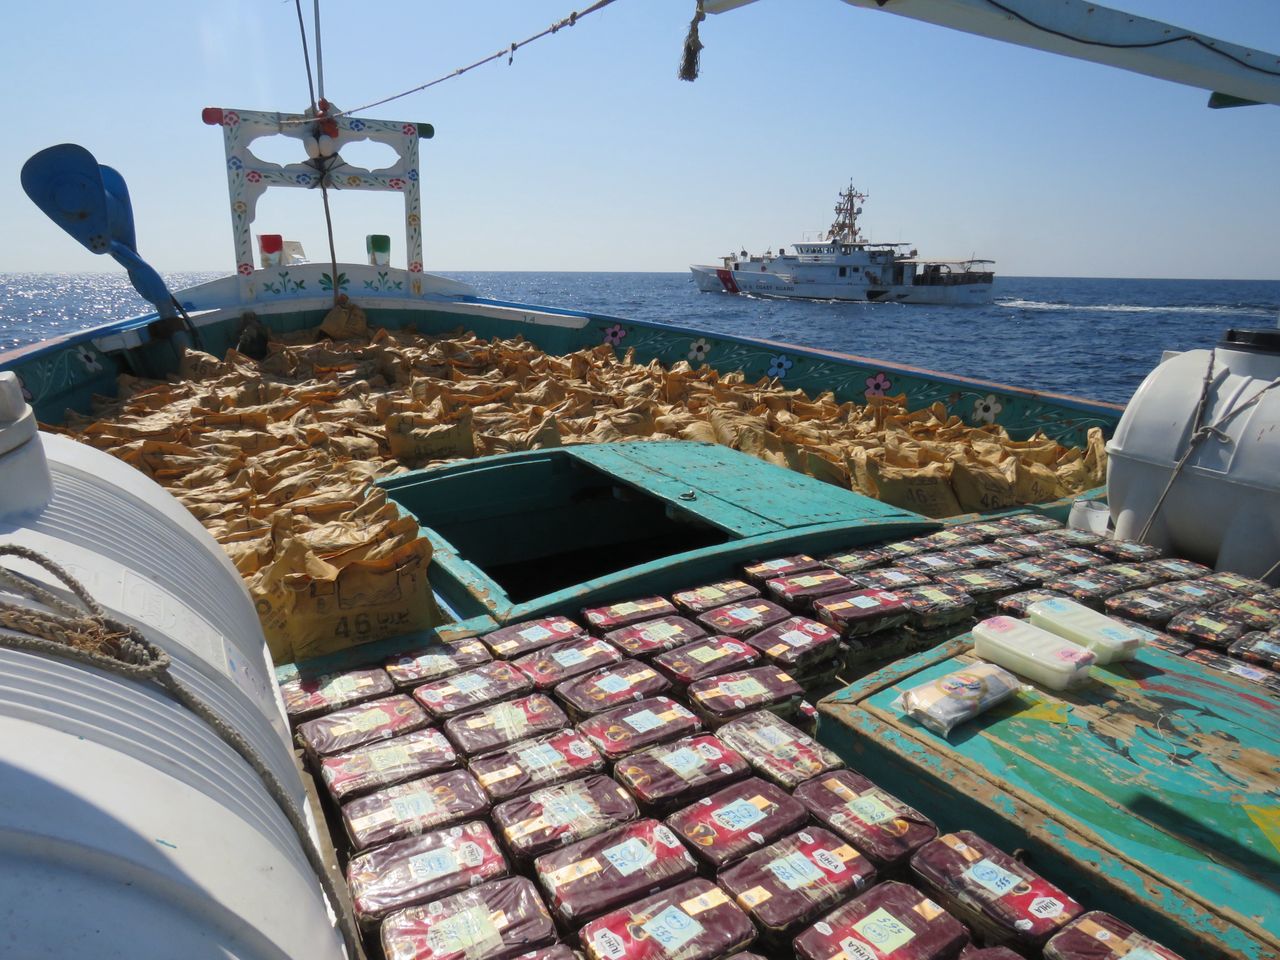 Statek rybacki przemycał ponad 4 tony narkotyków